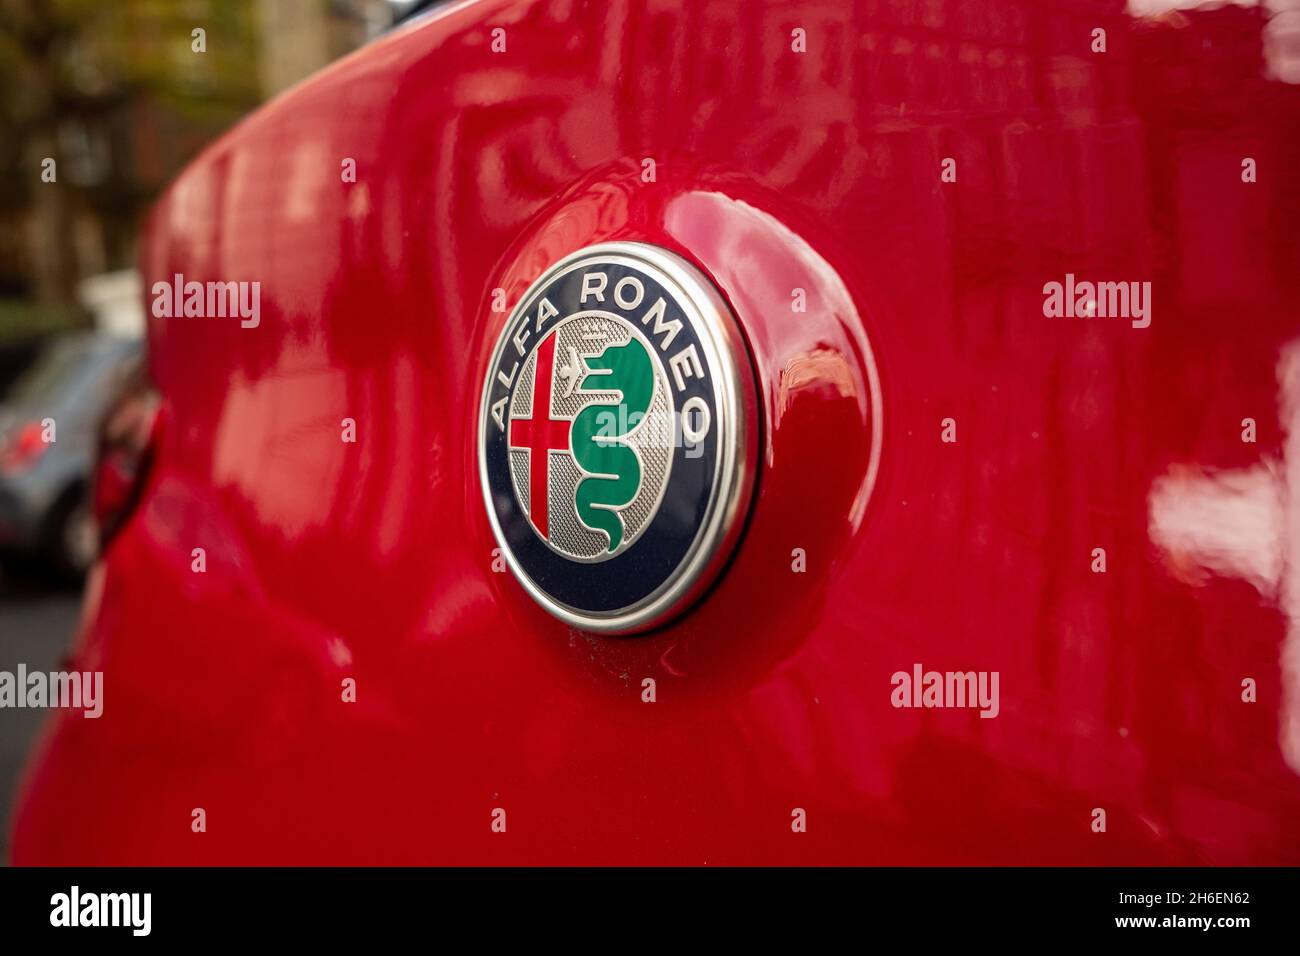 Londra - Novembre 2021: Un Alfa Romeo Stelvio parcheggiato sulla strada di Londra. Un SUV del costruttore italiano di automobili Foto Stock